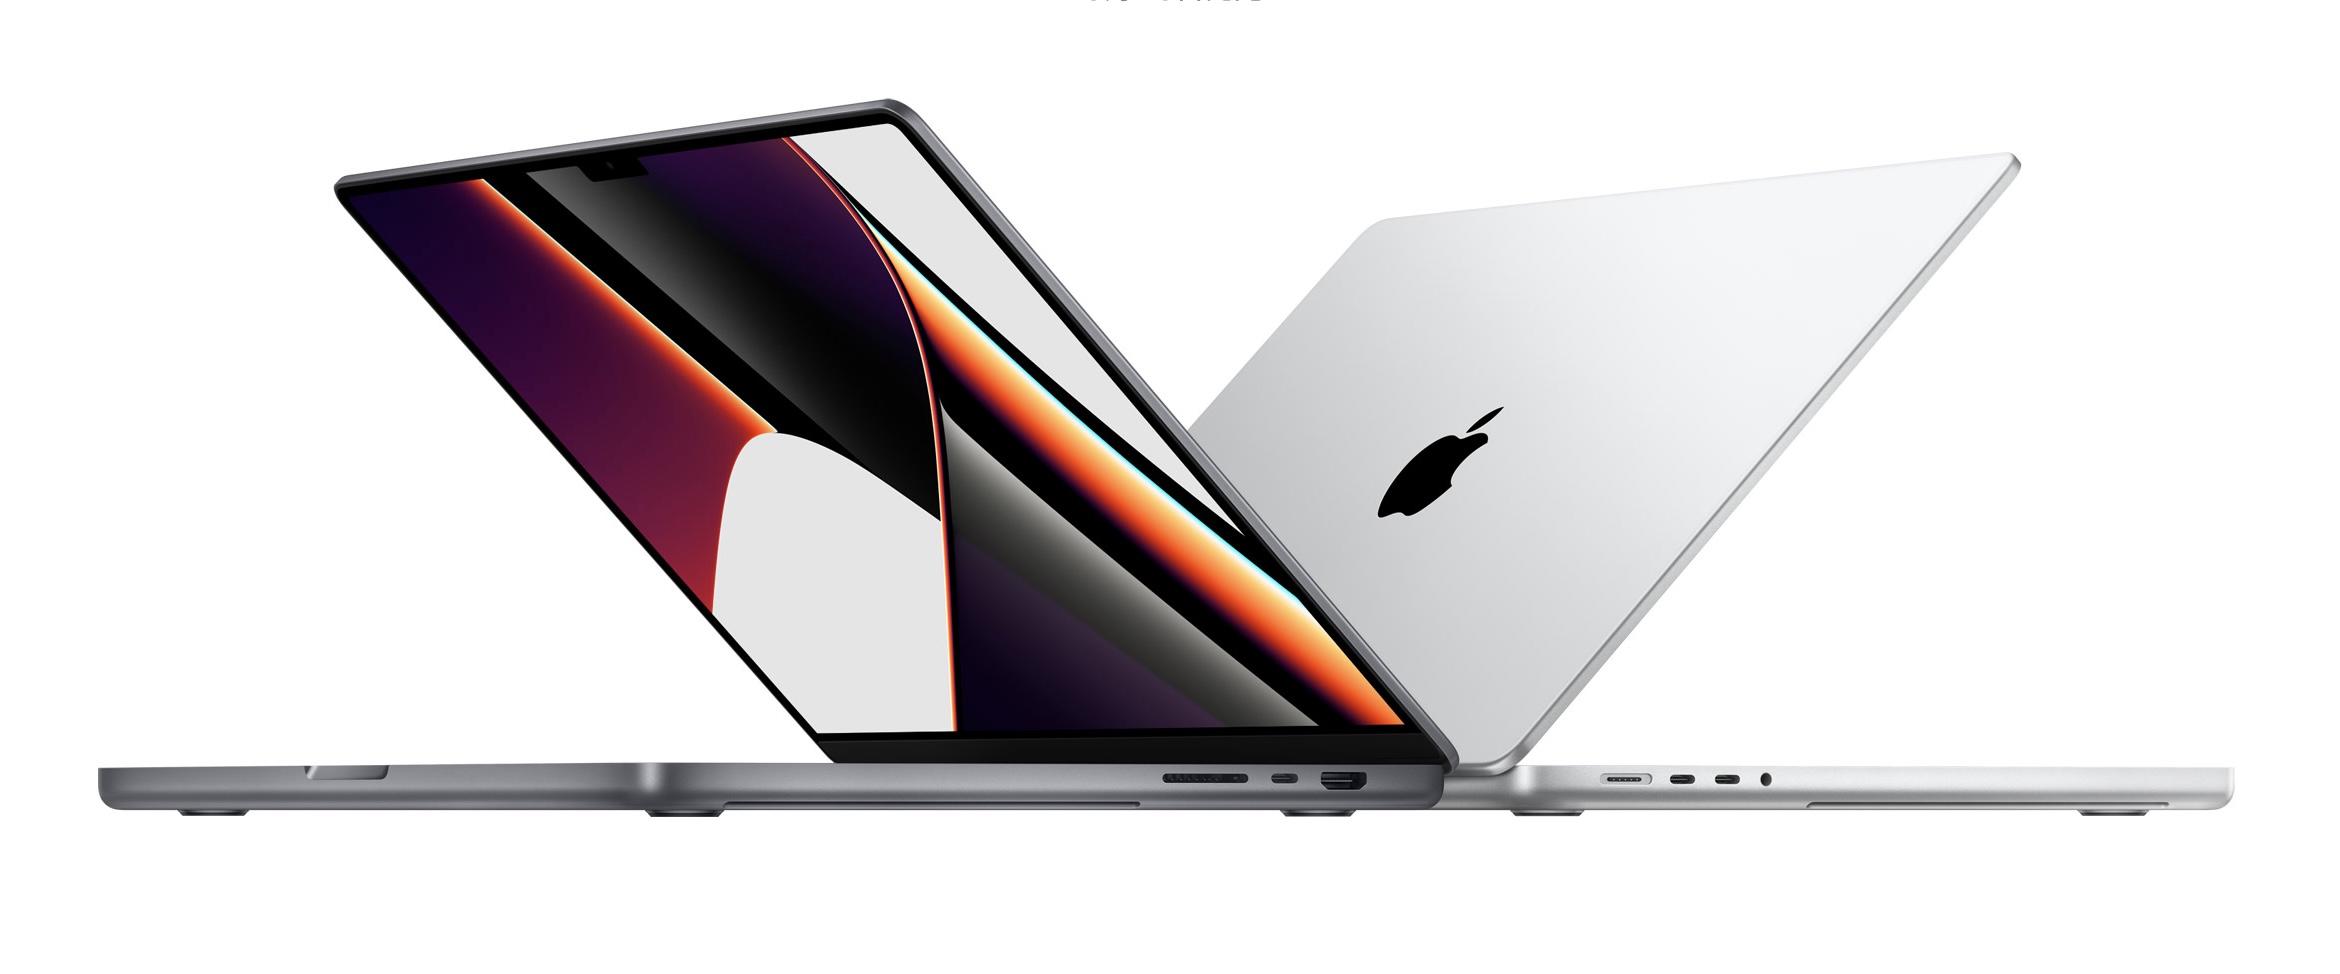 MacBook Pro 16インチ M1 Max 2021 メモリ64GB